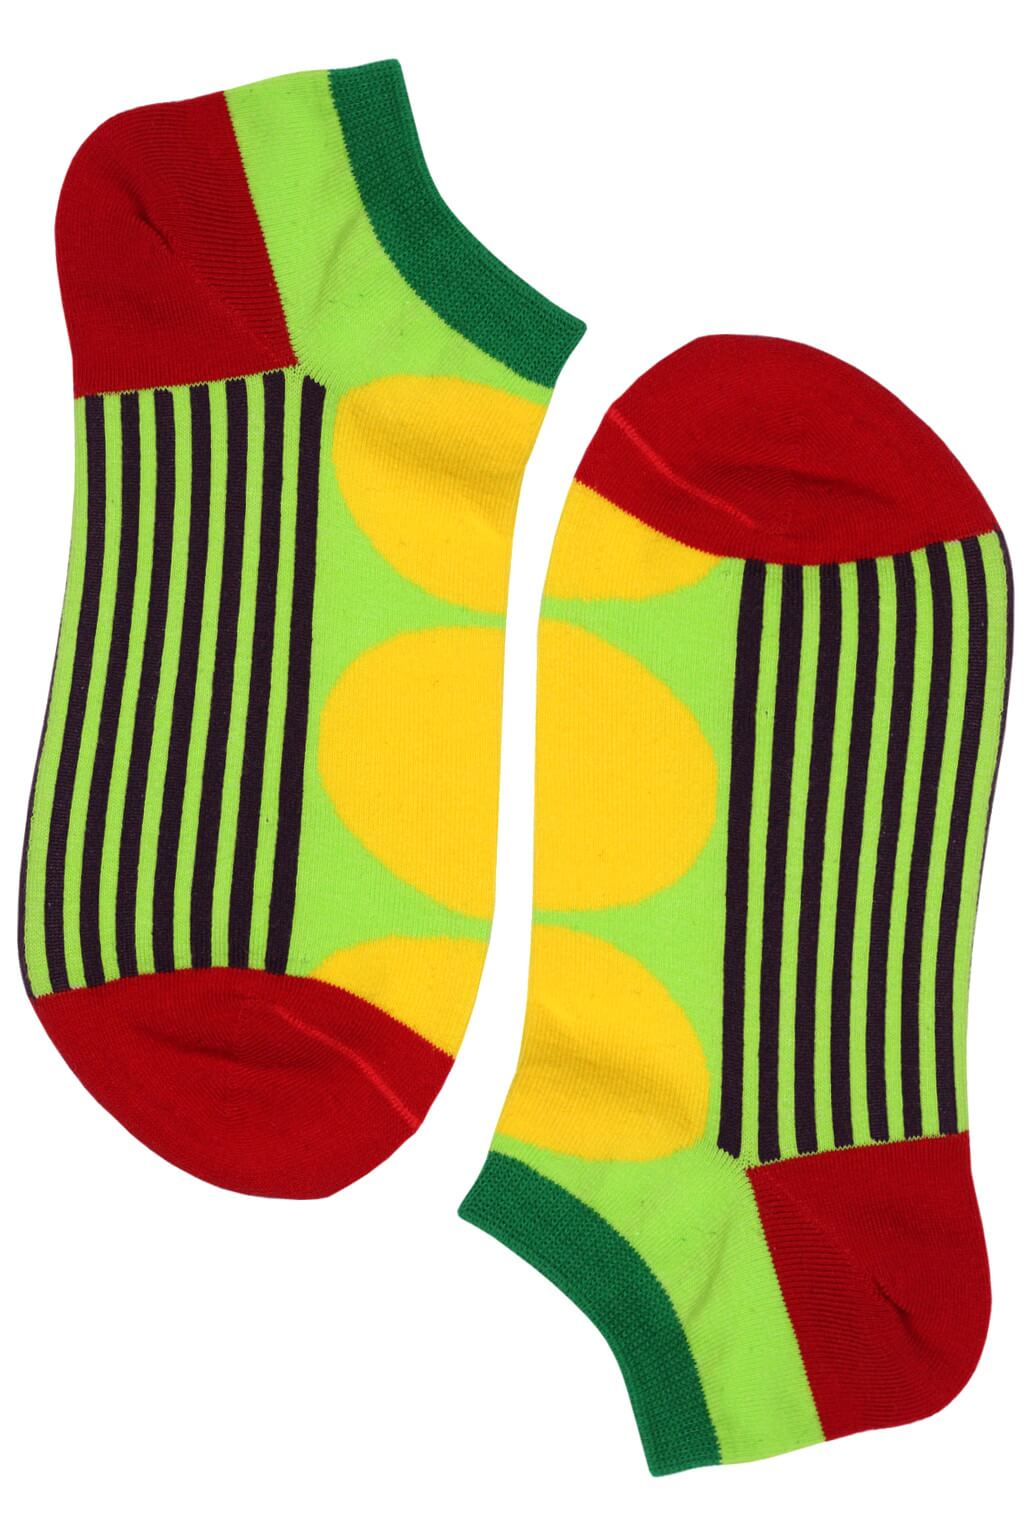 Crazy Dot kotníčkové bavlněné ponožky ECC2001 39-42 žlutá